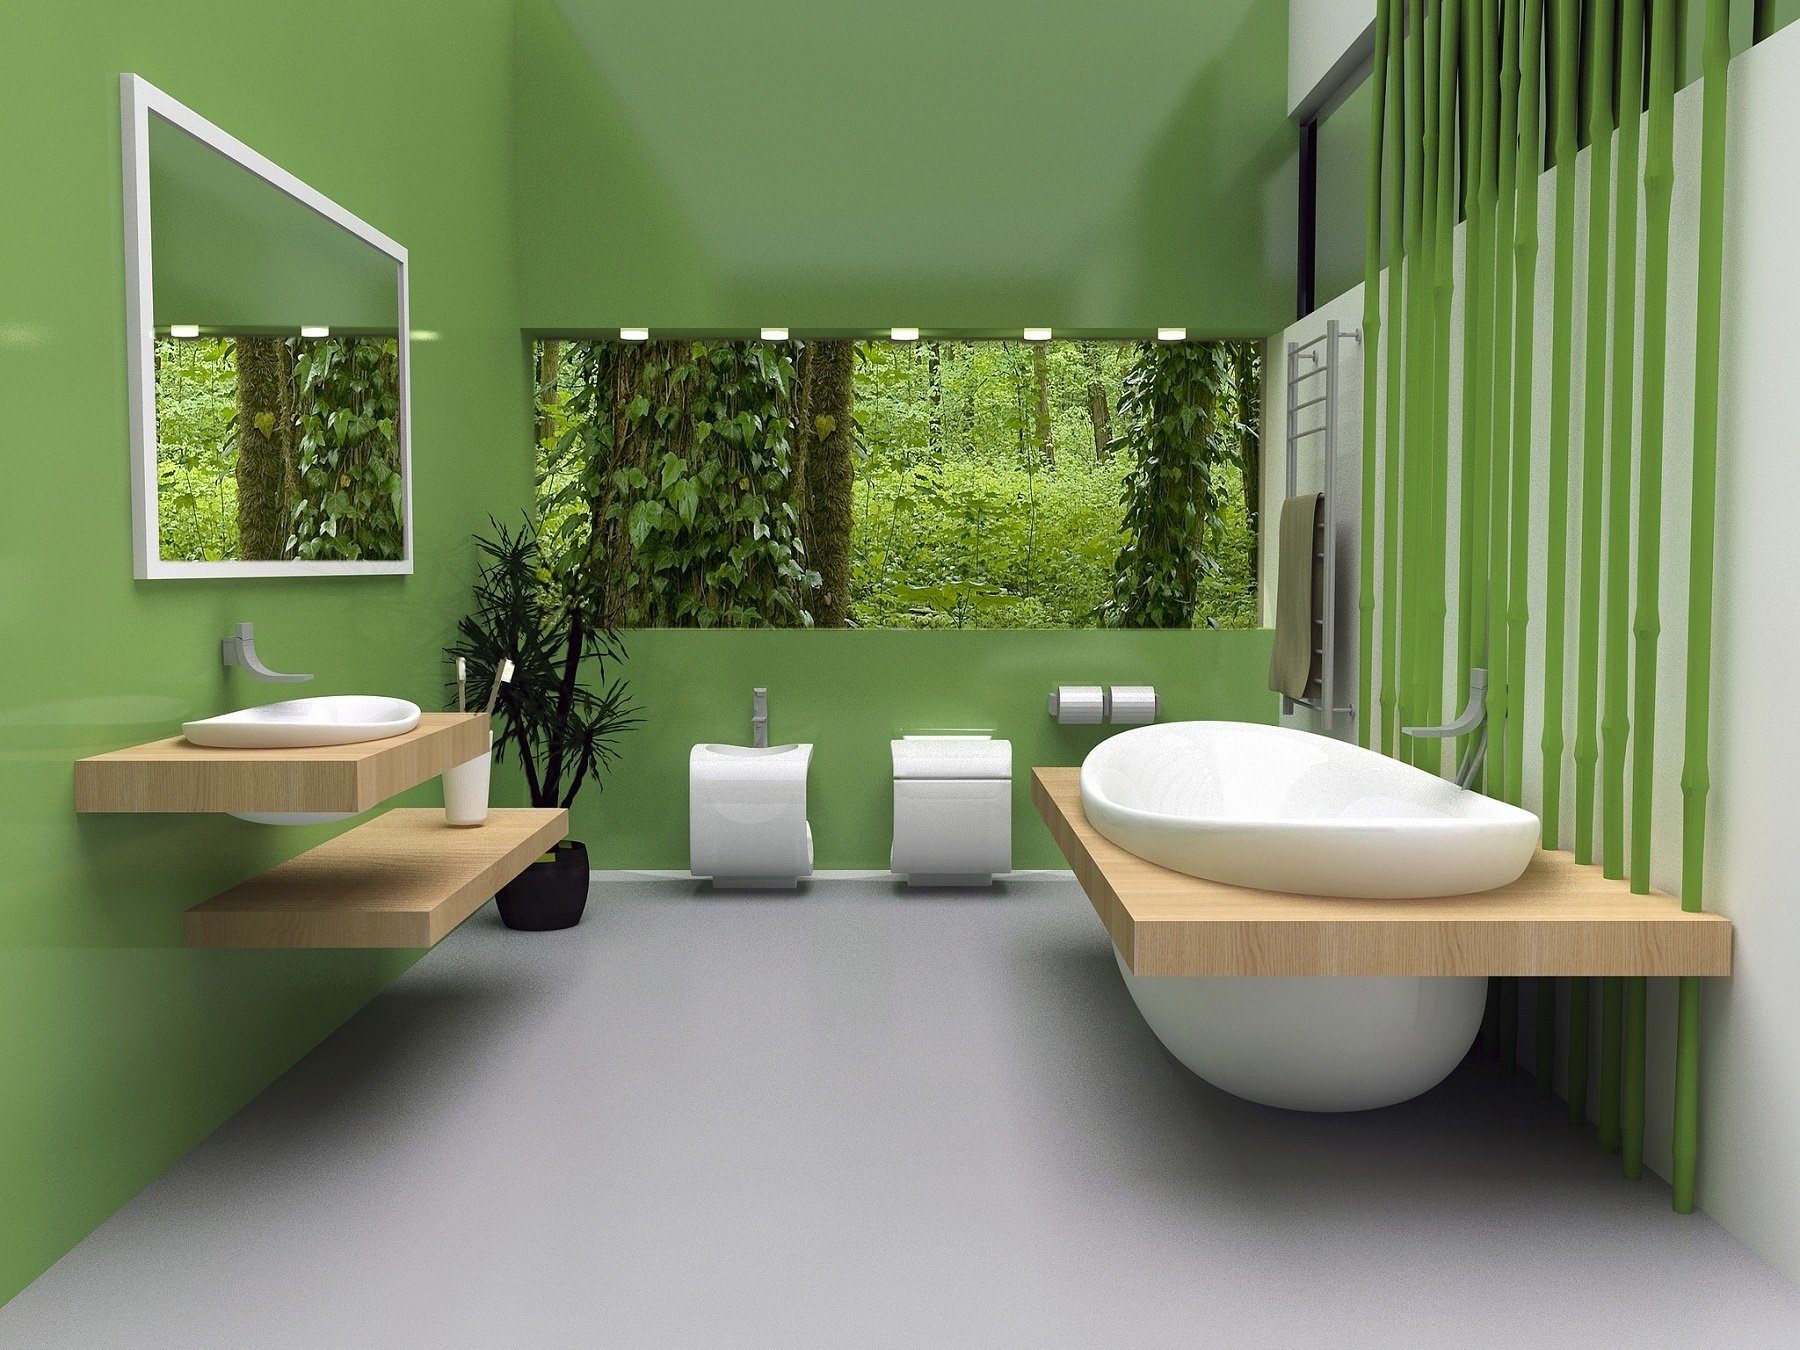 салатовая ванная комната дизайн фото